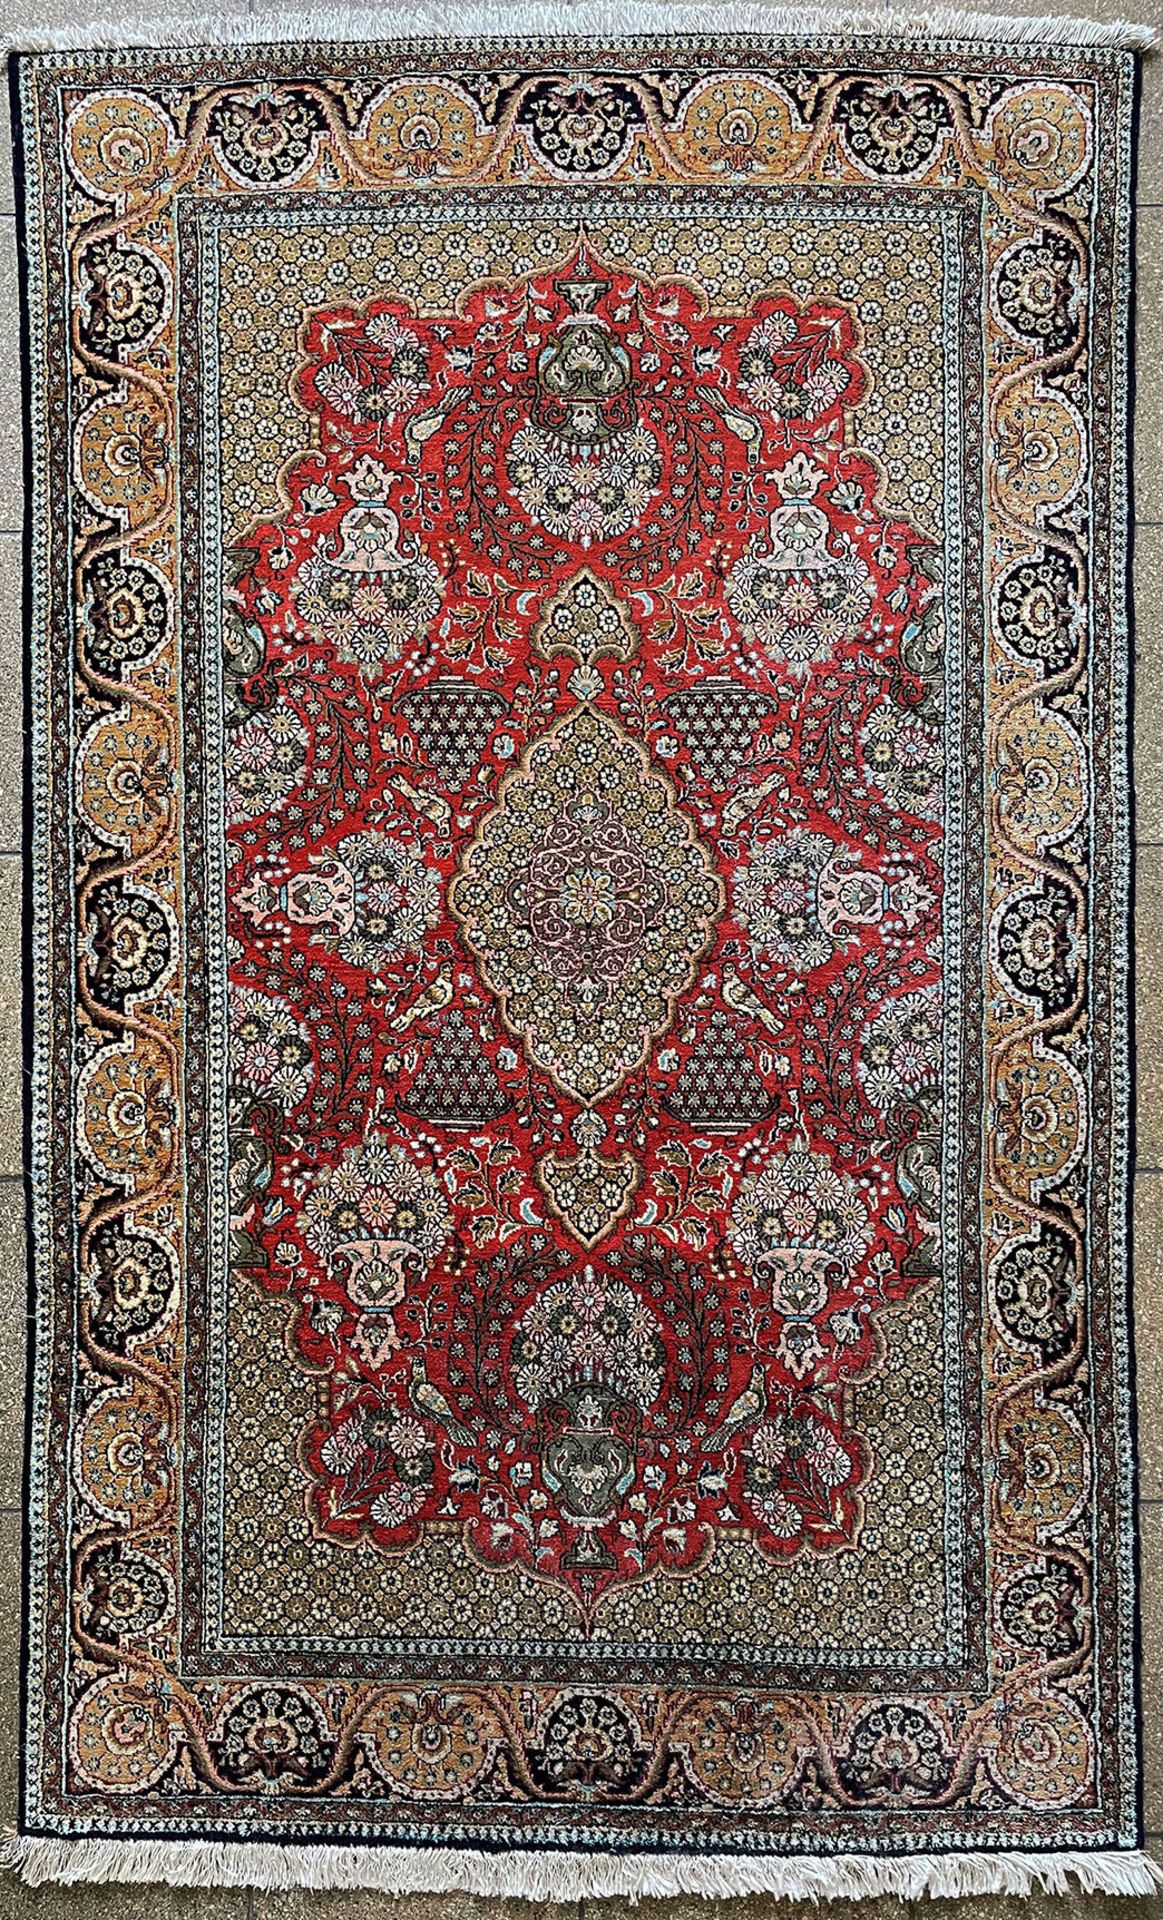 Iran Ghom, Muster in Rot, Rosé und Grün, 700000 Knoten pro Quadratmeter, gereinigt, 1,67 x 1,04